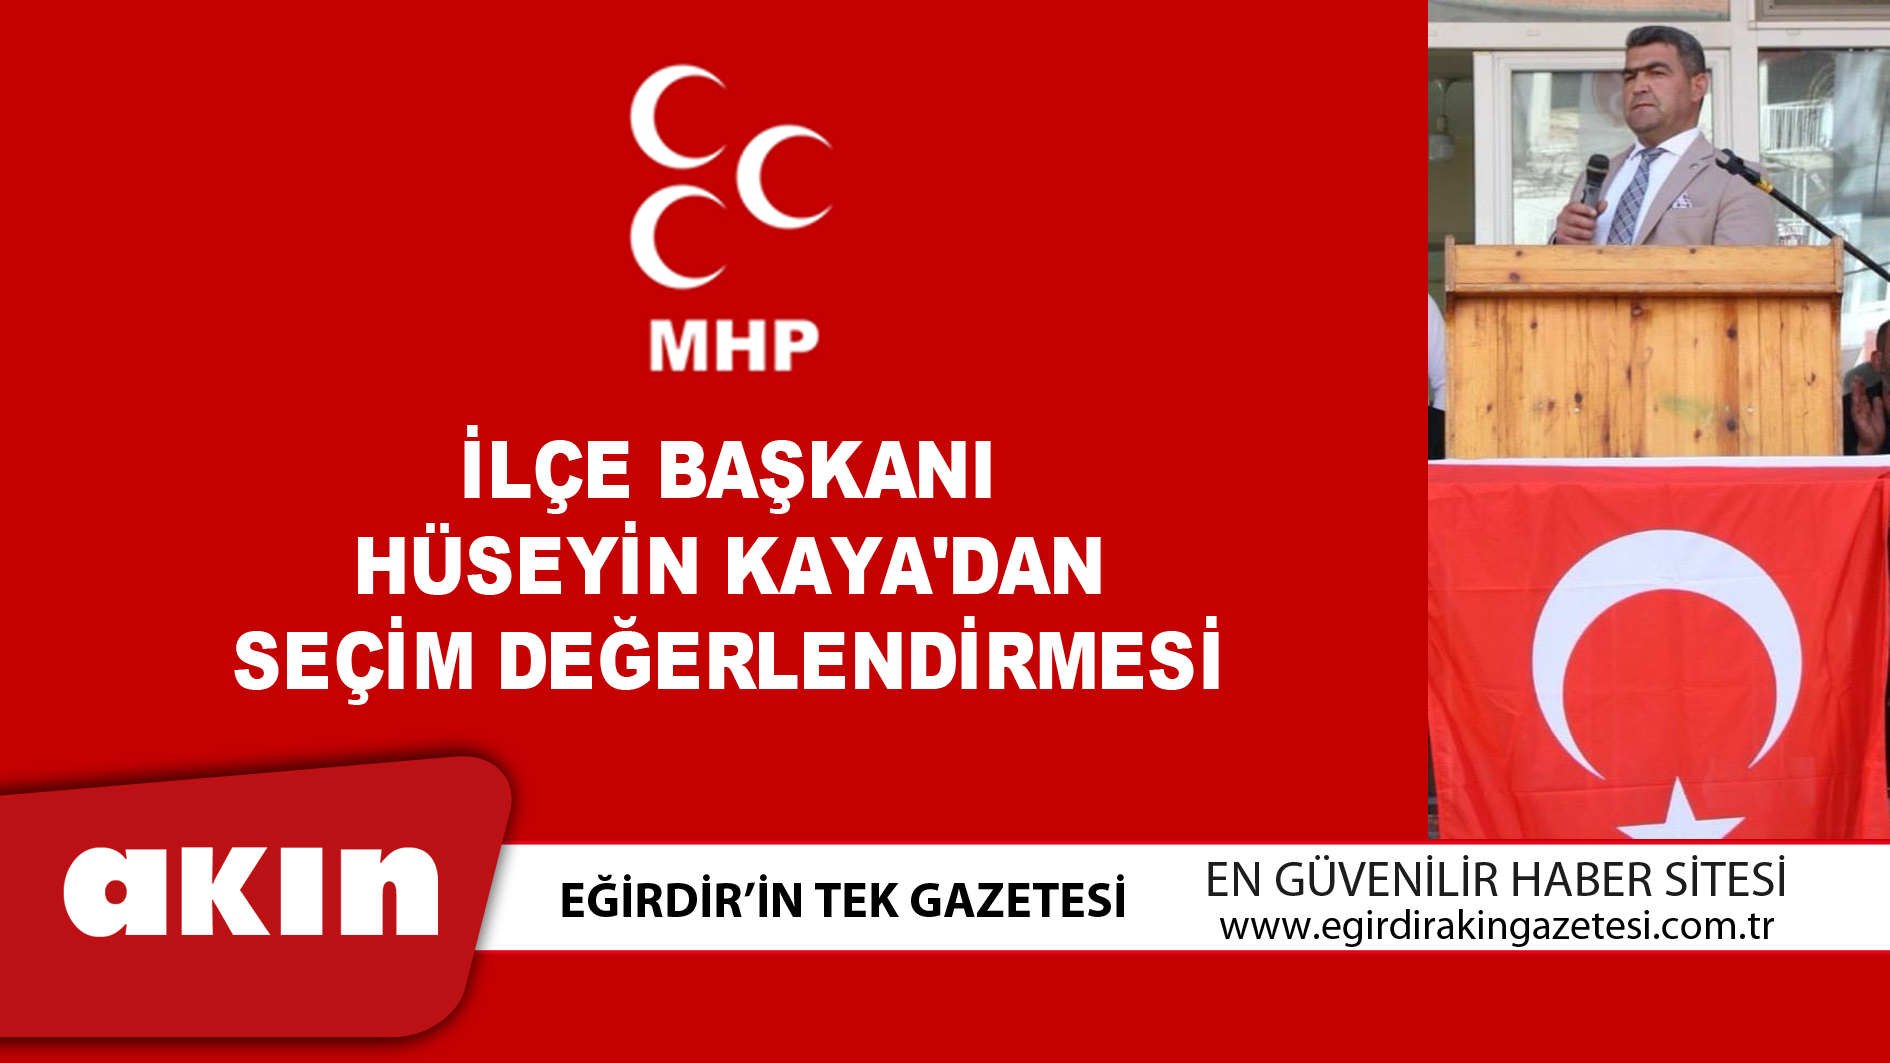 MHP İlçe Başkanı Hüseyin Kaya'dan Seçim Değerlendirmesi